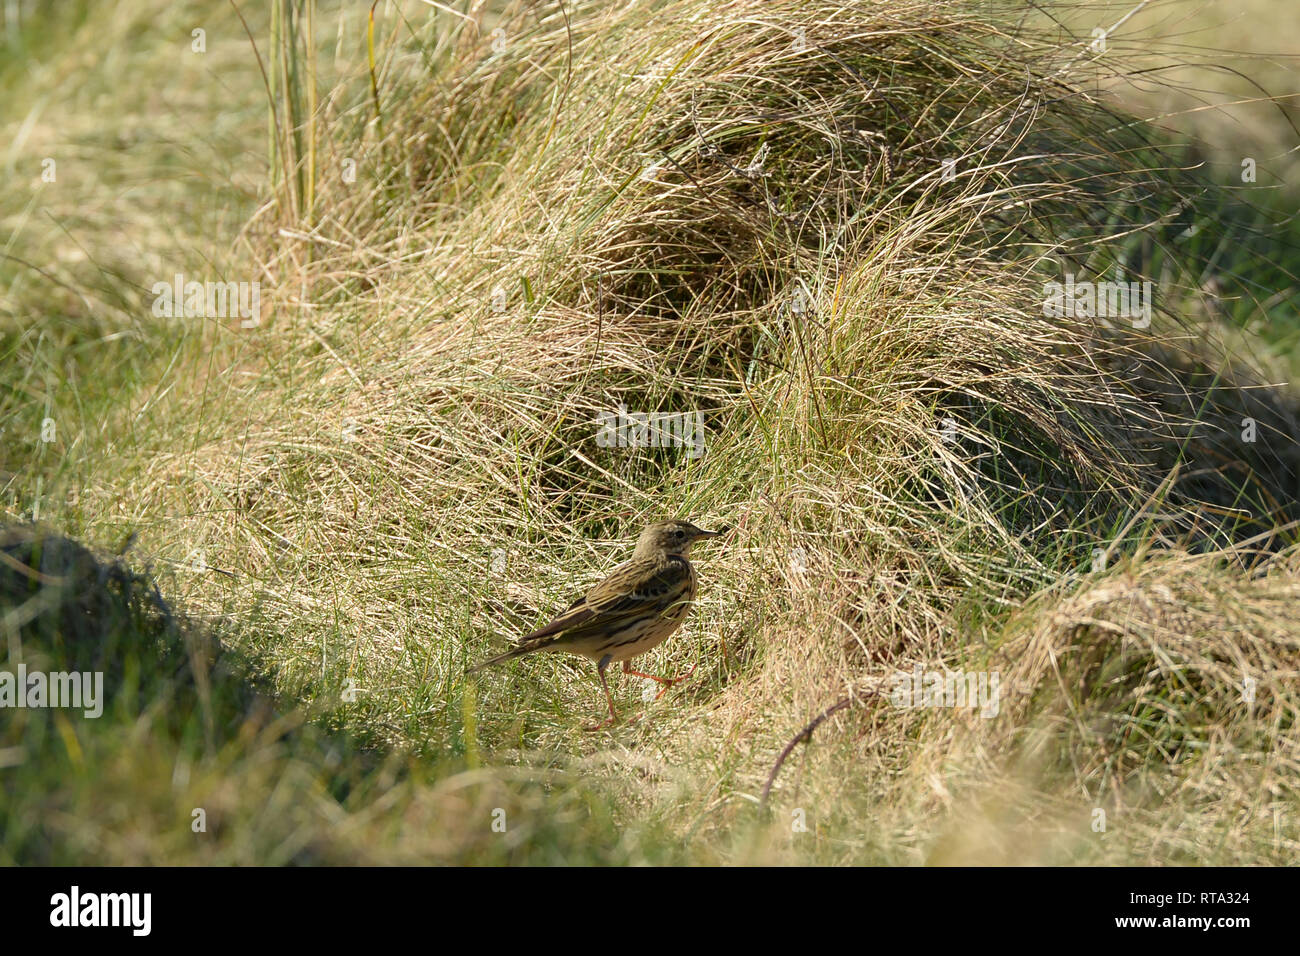 Skylark en touffes de hautes herbes qui tire parti des pistes naturelles à travers la végétation pour se nourrir sur les insectes sans méfiance Banque D'Images